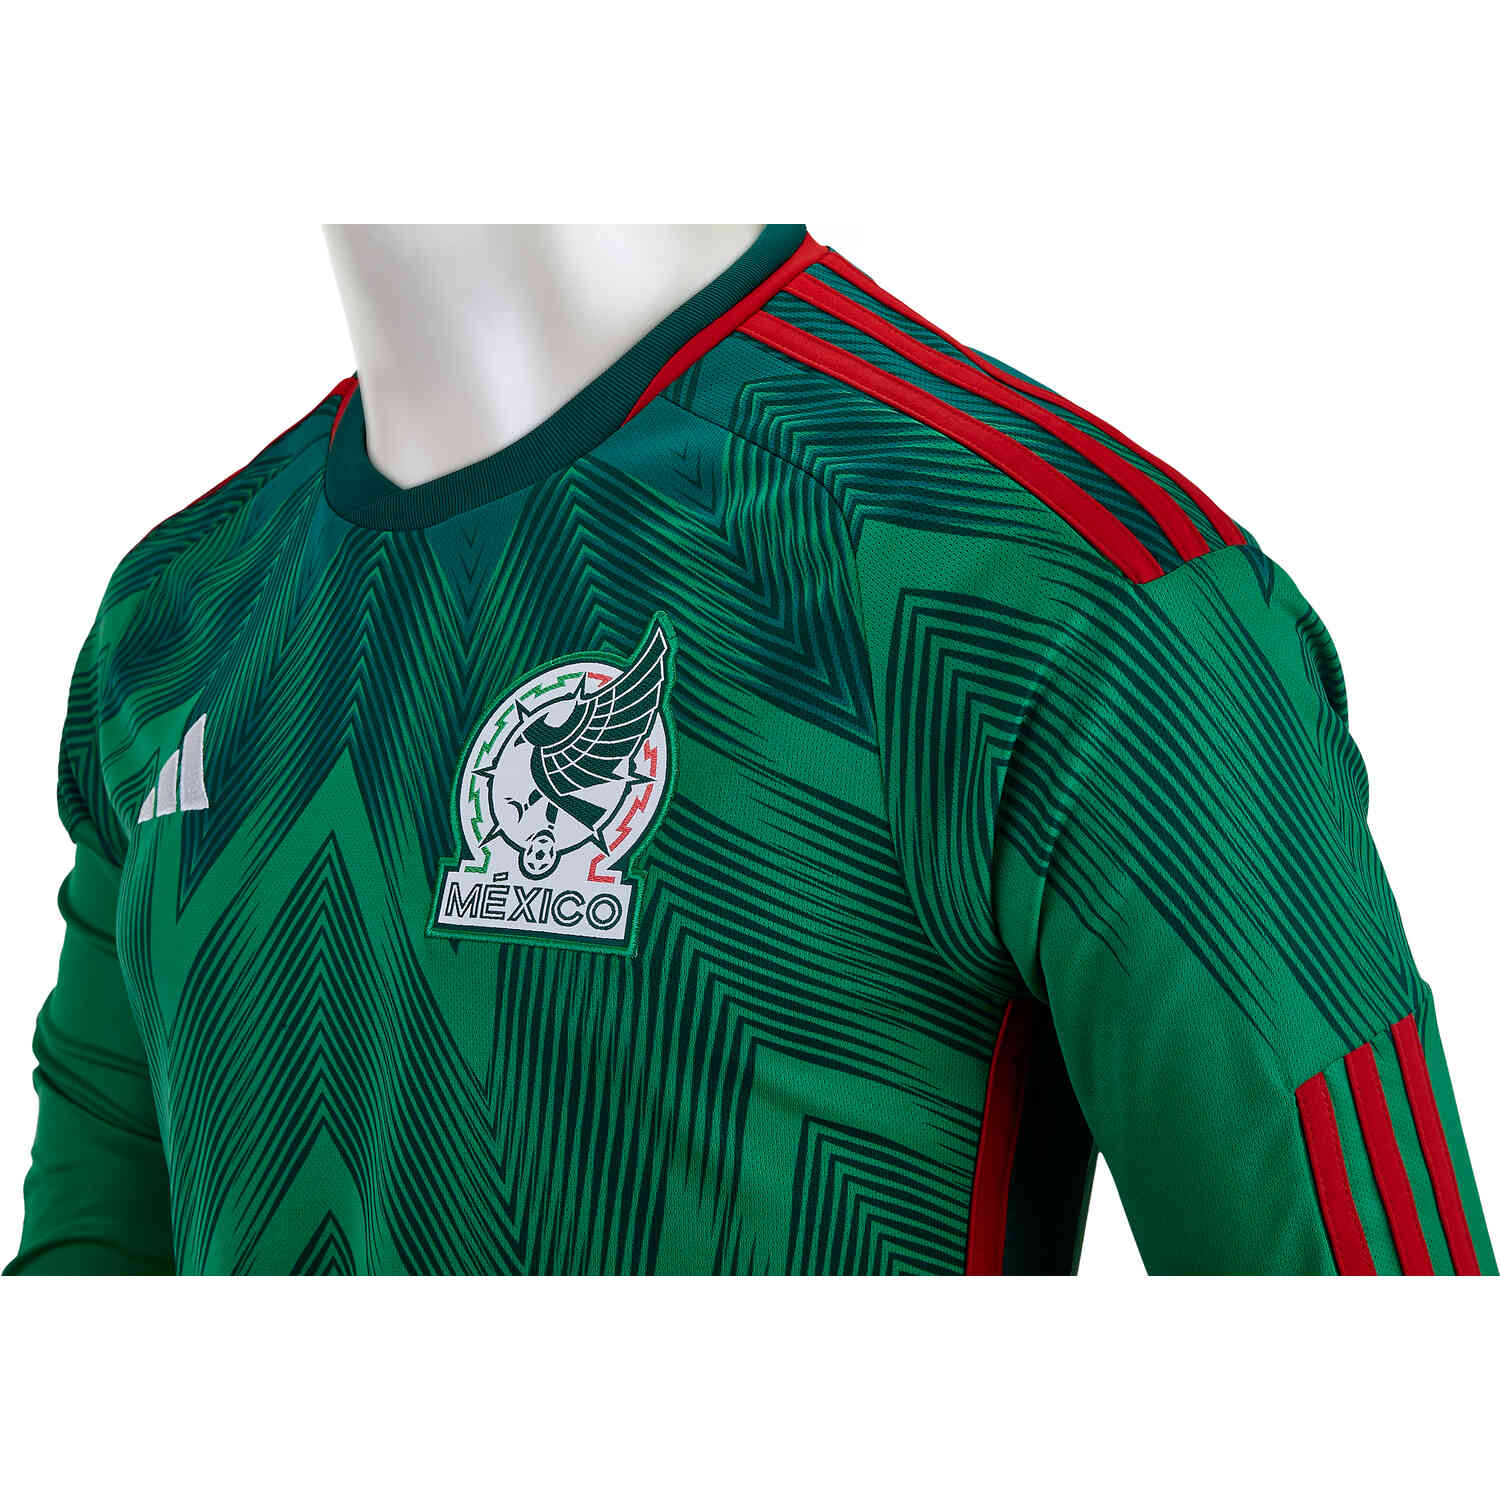 Mexico jersey longsleeve